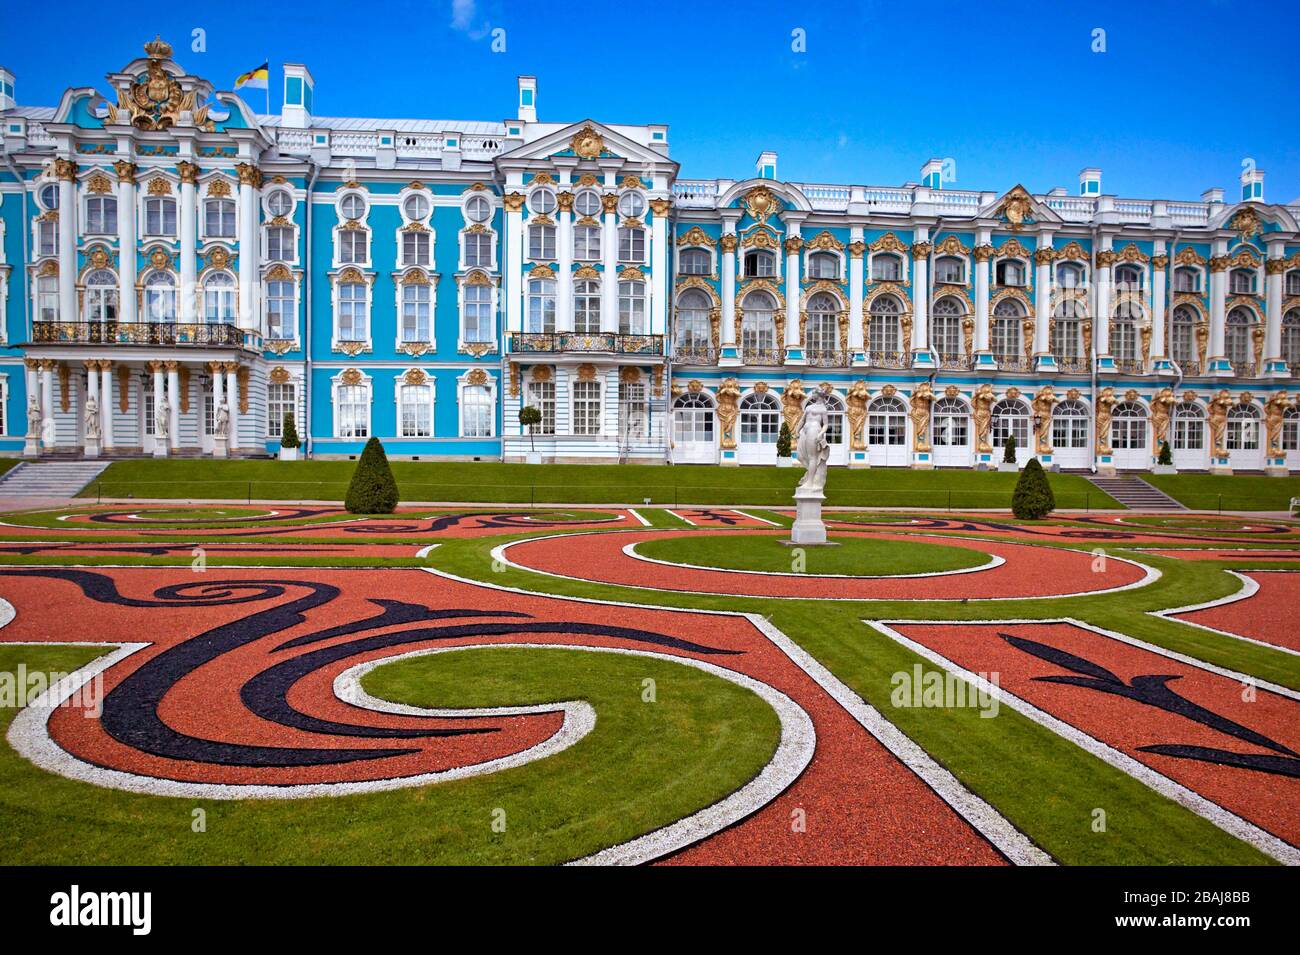 Palais Catherine, Musée de l'Hermitage (Palais d'hiver), Tsarskoye Selo (Pouchkine), au sud de Saint-Pétersbourg, Fédération de Russie Banque D'Images